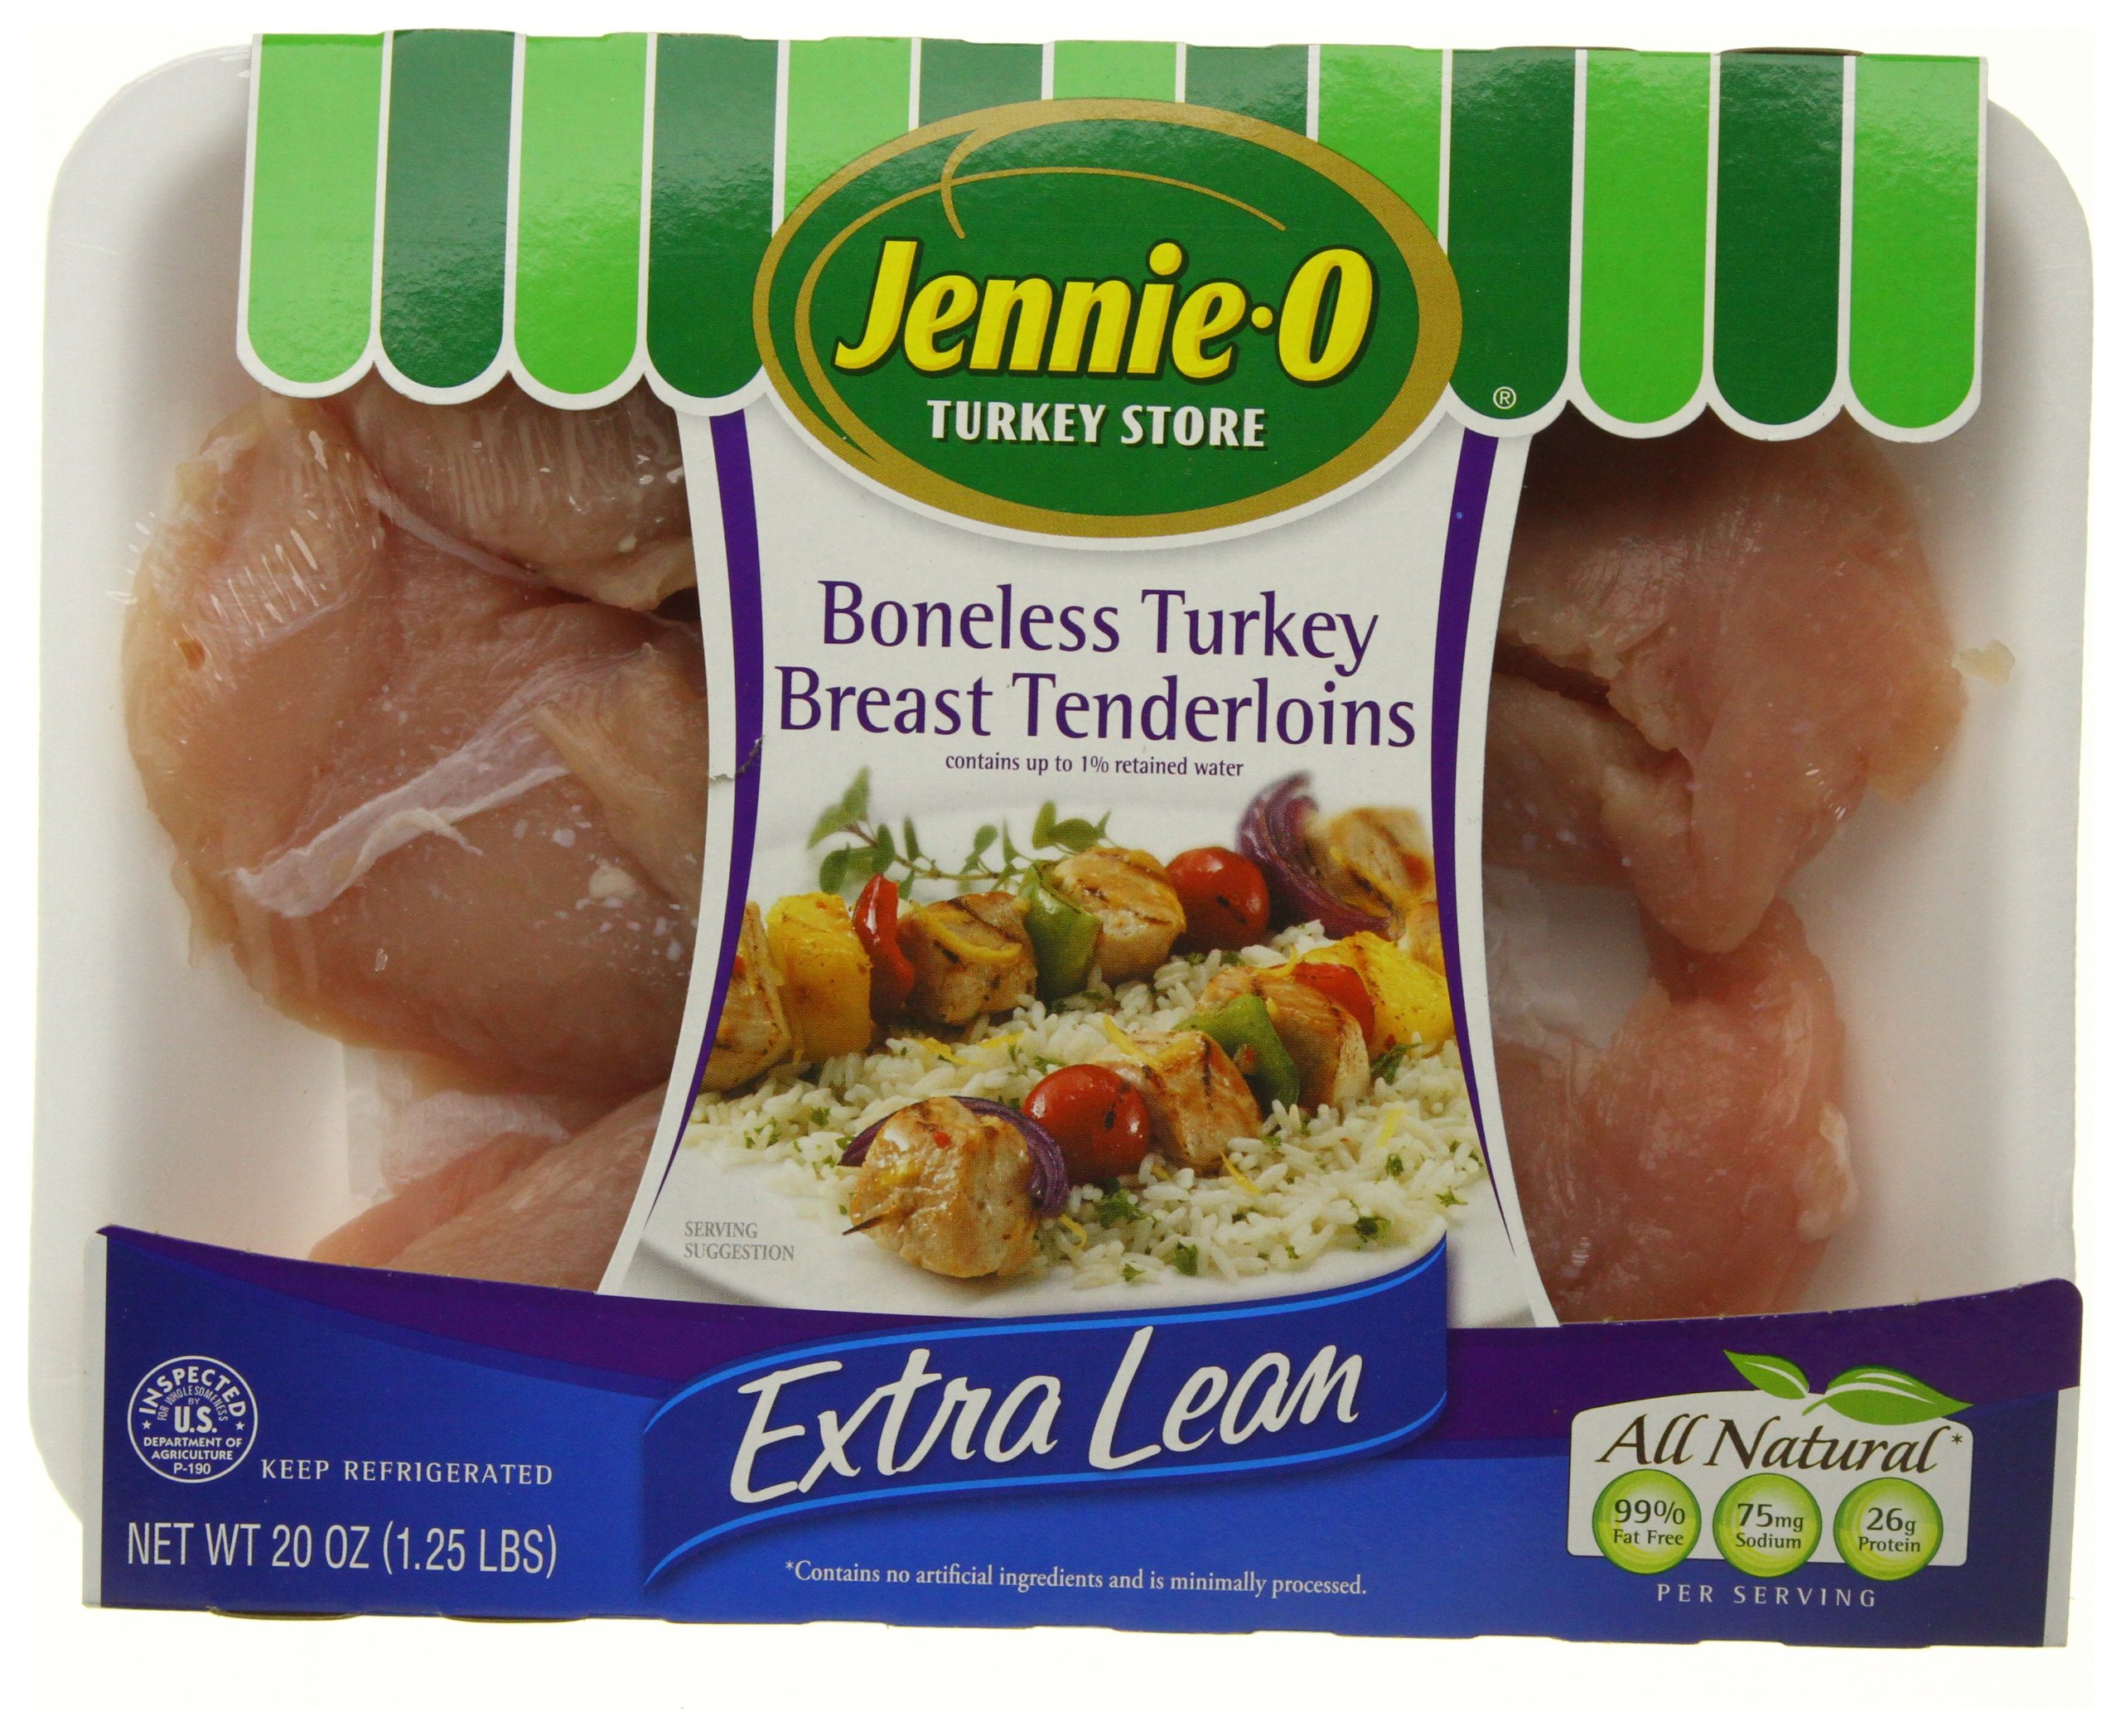 A package of boneless turkey breast tenderloins